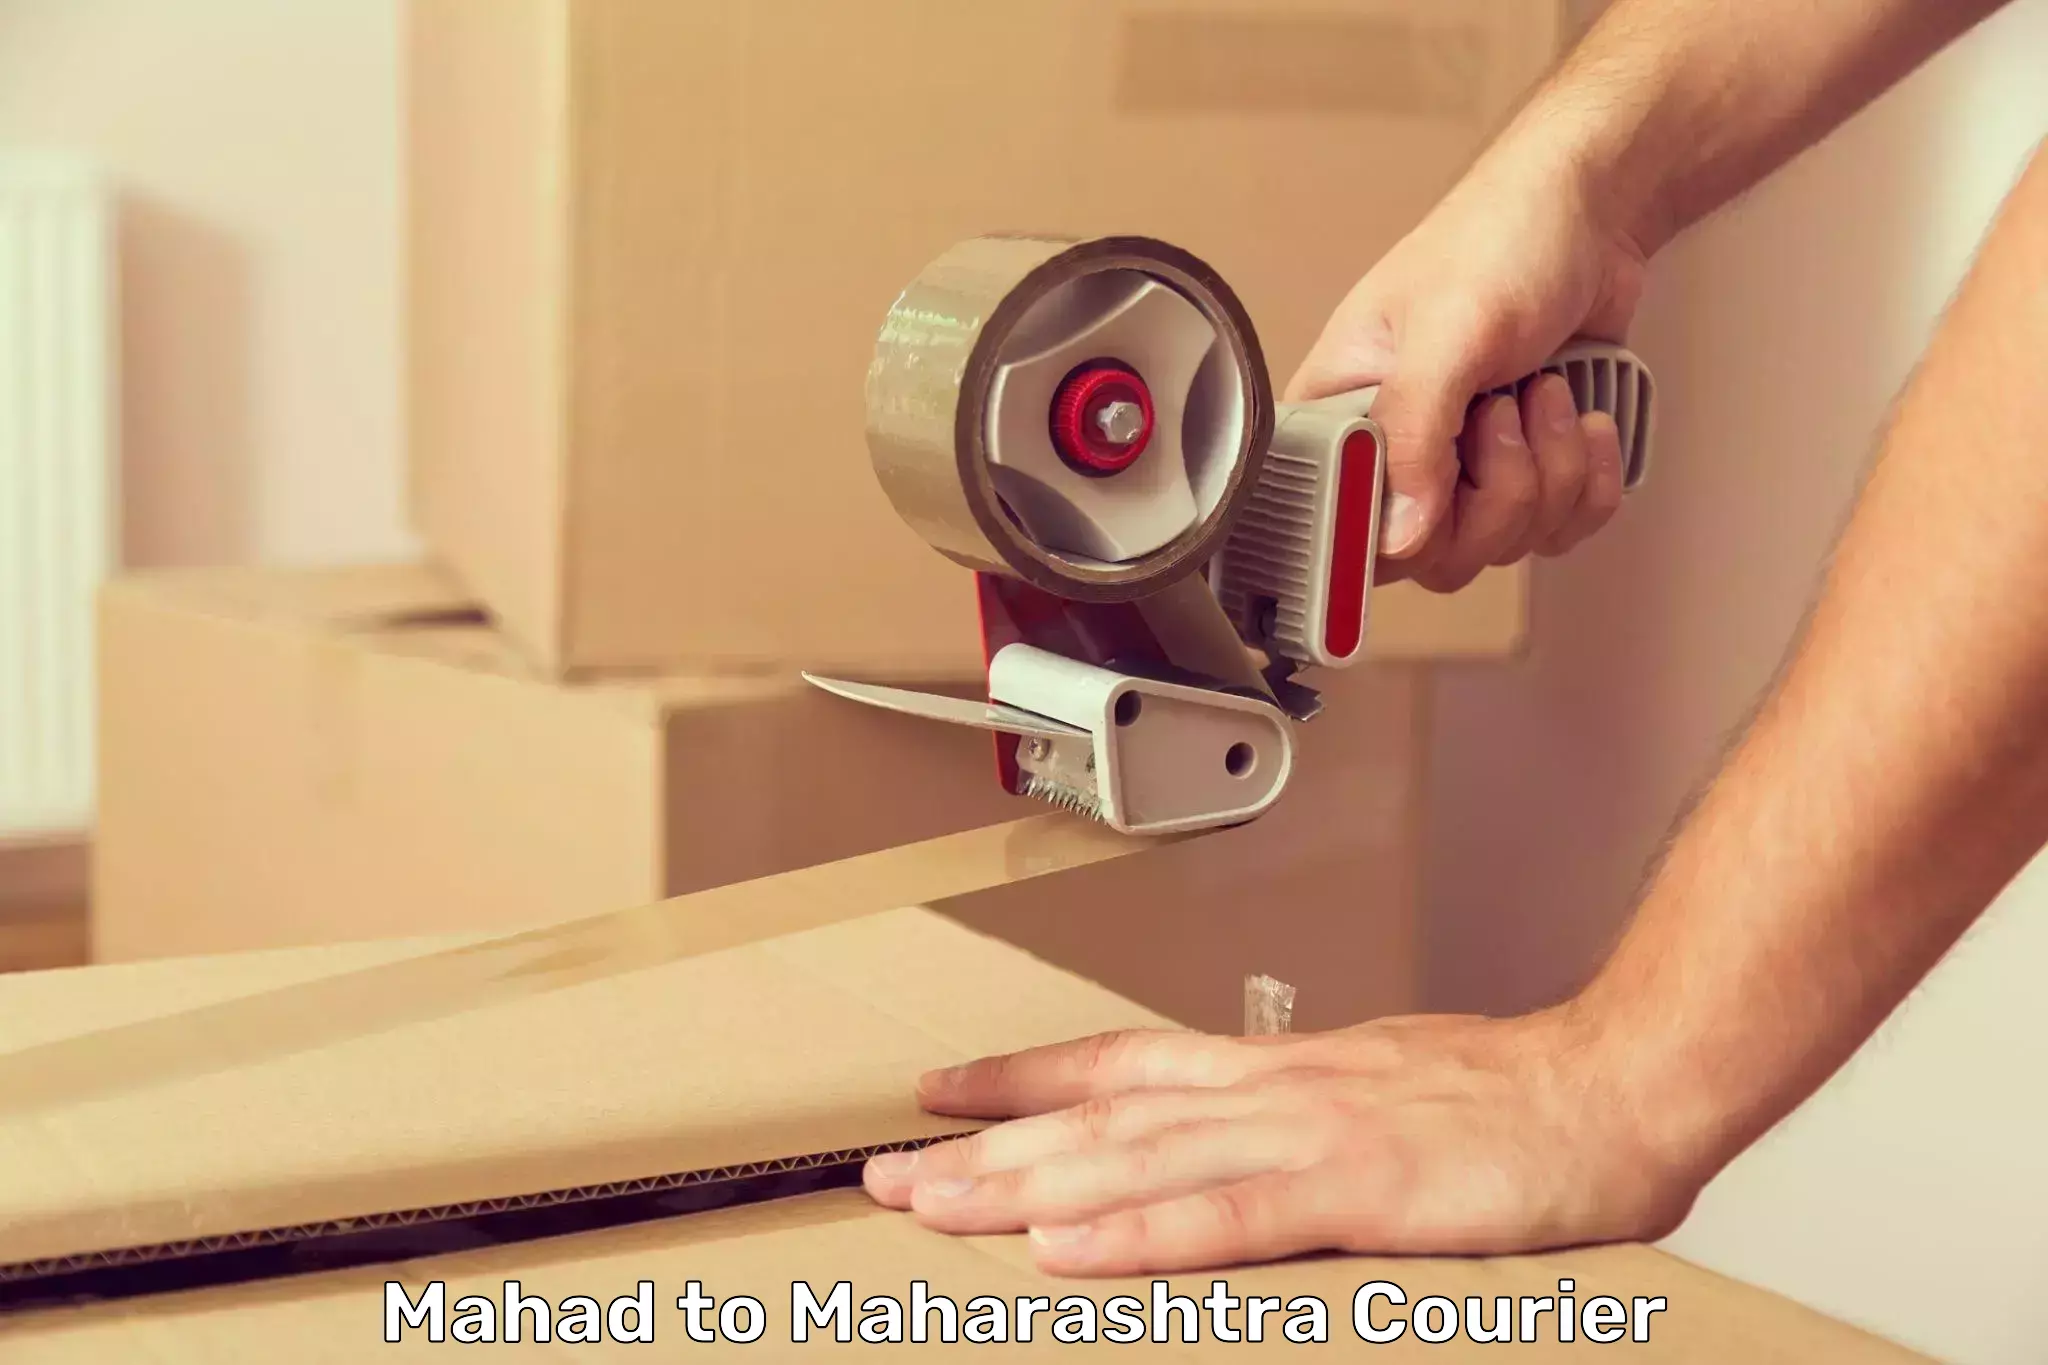 Courier service partnerships Mahad to Jalgaon